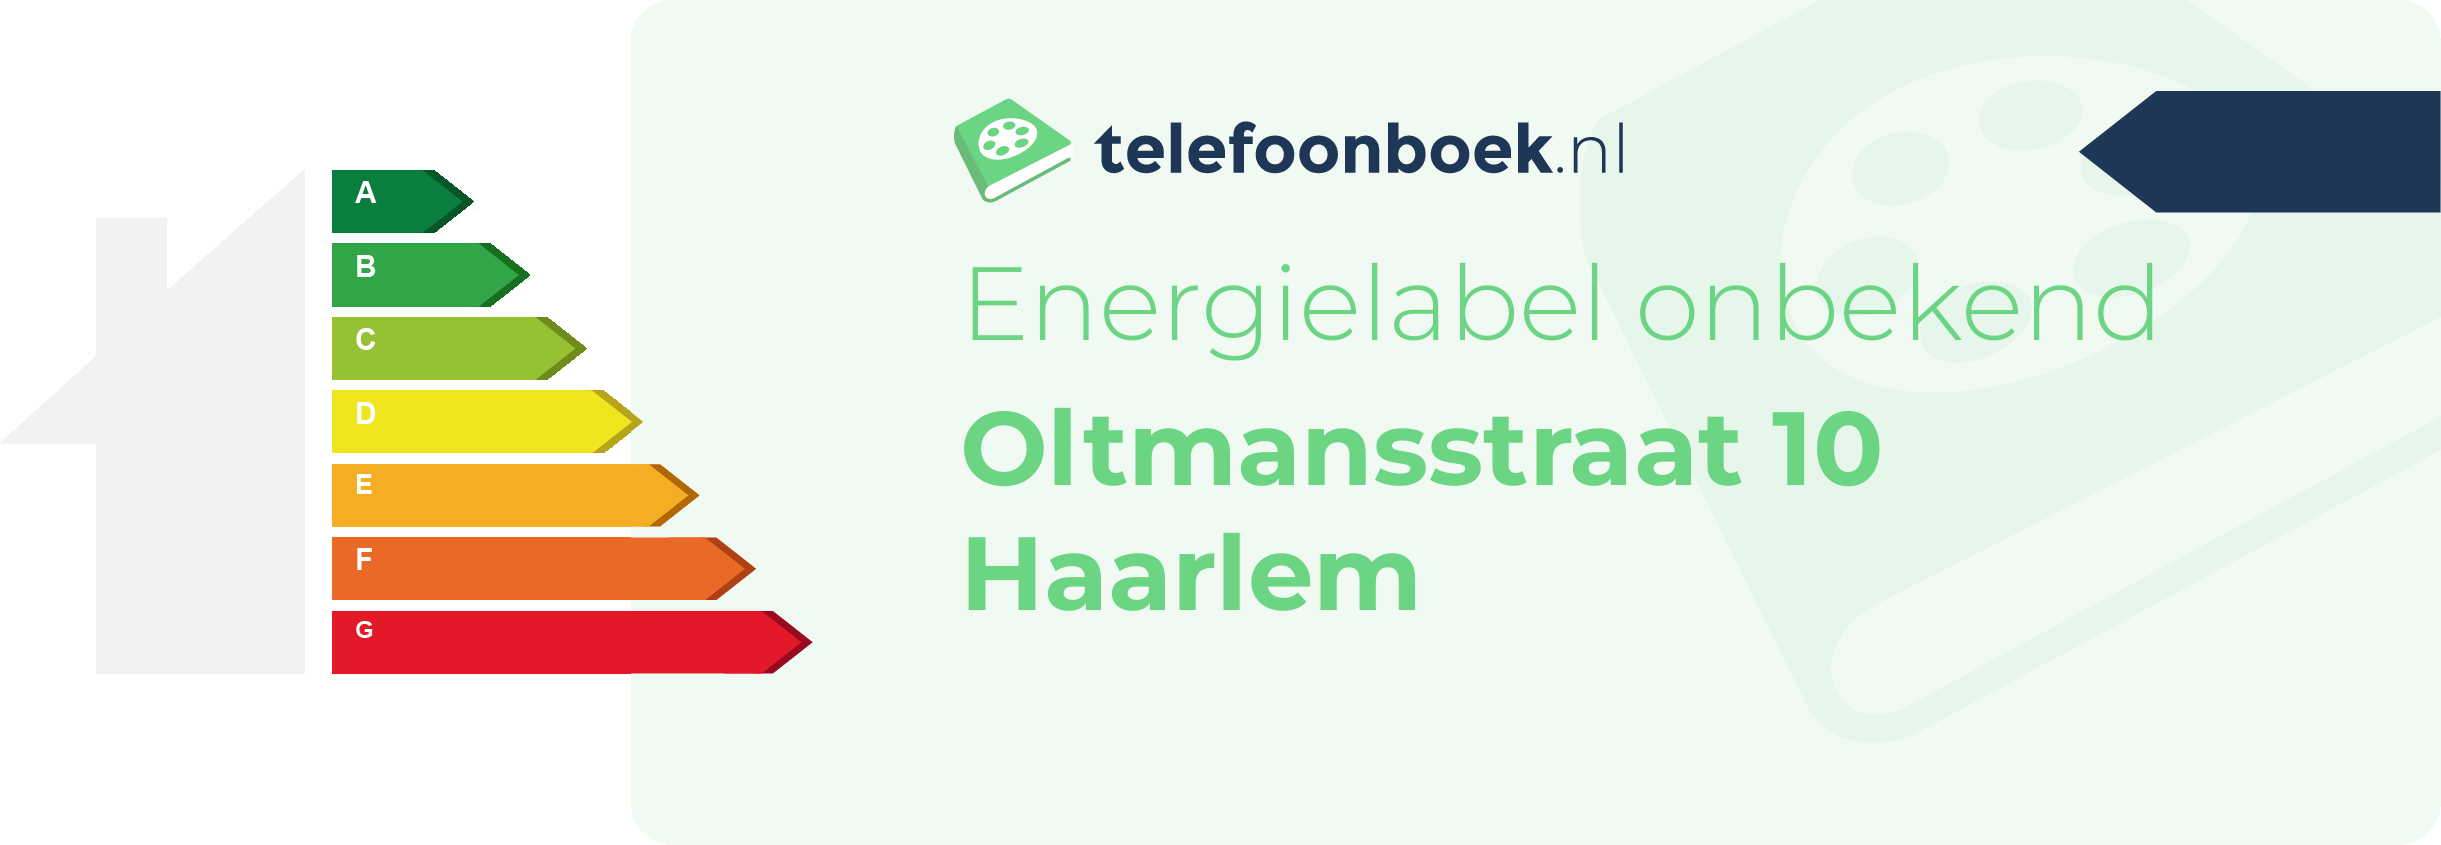 Energielabel Oltmansstraat 10 Haarlem